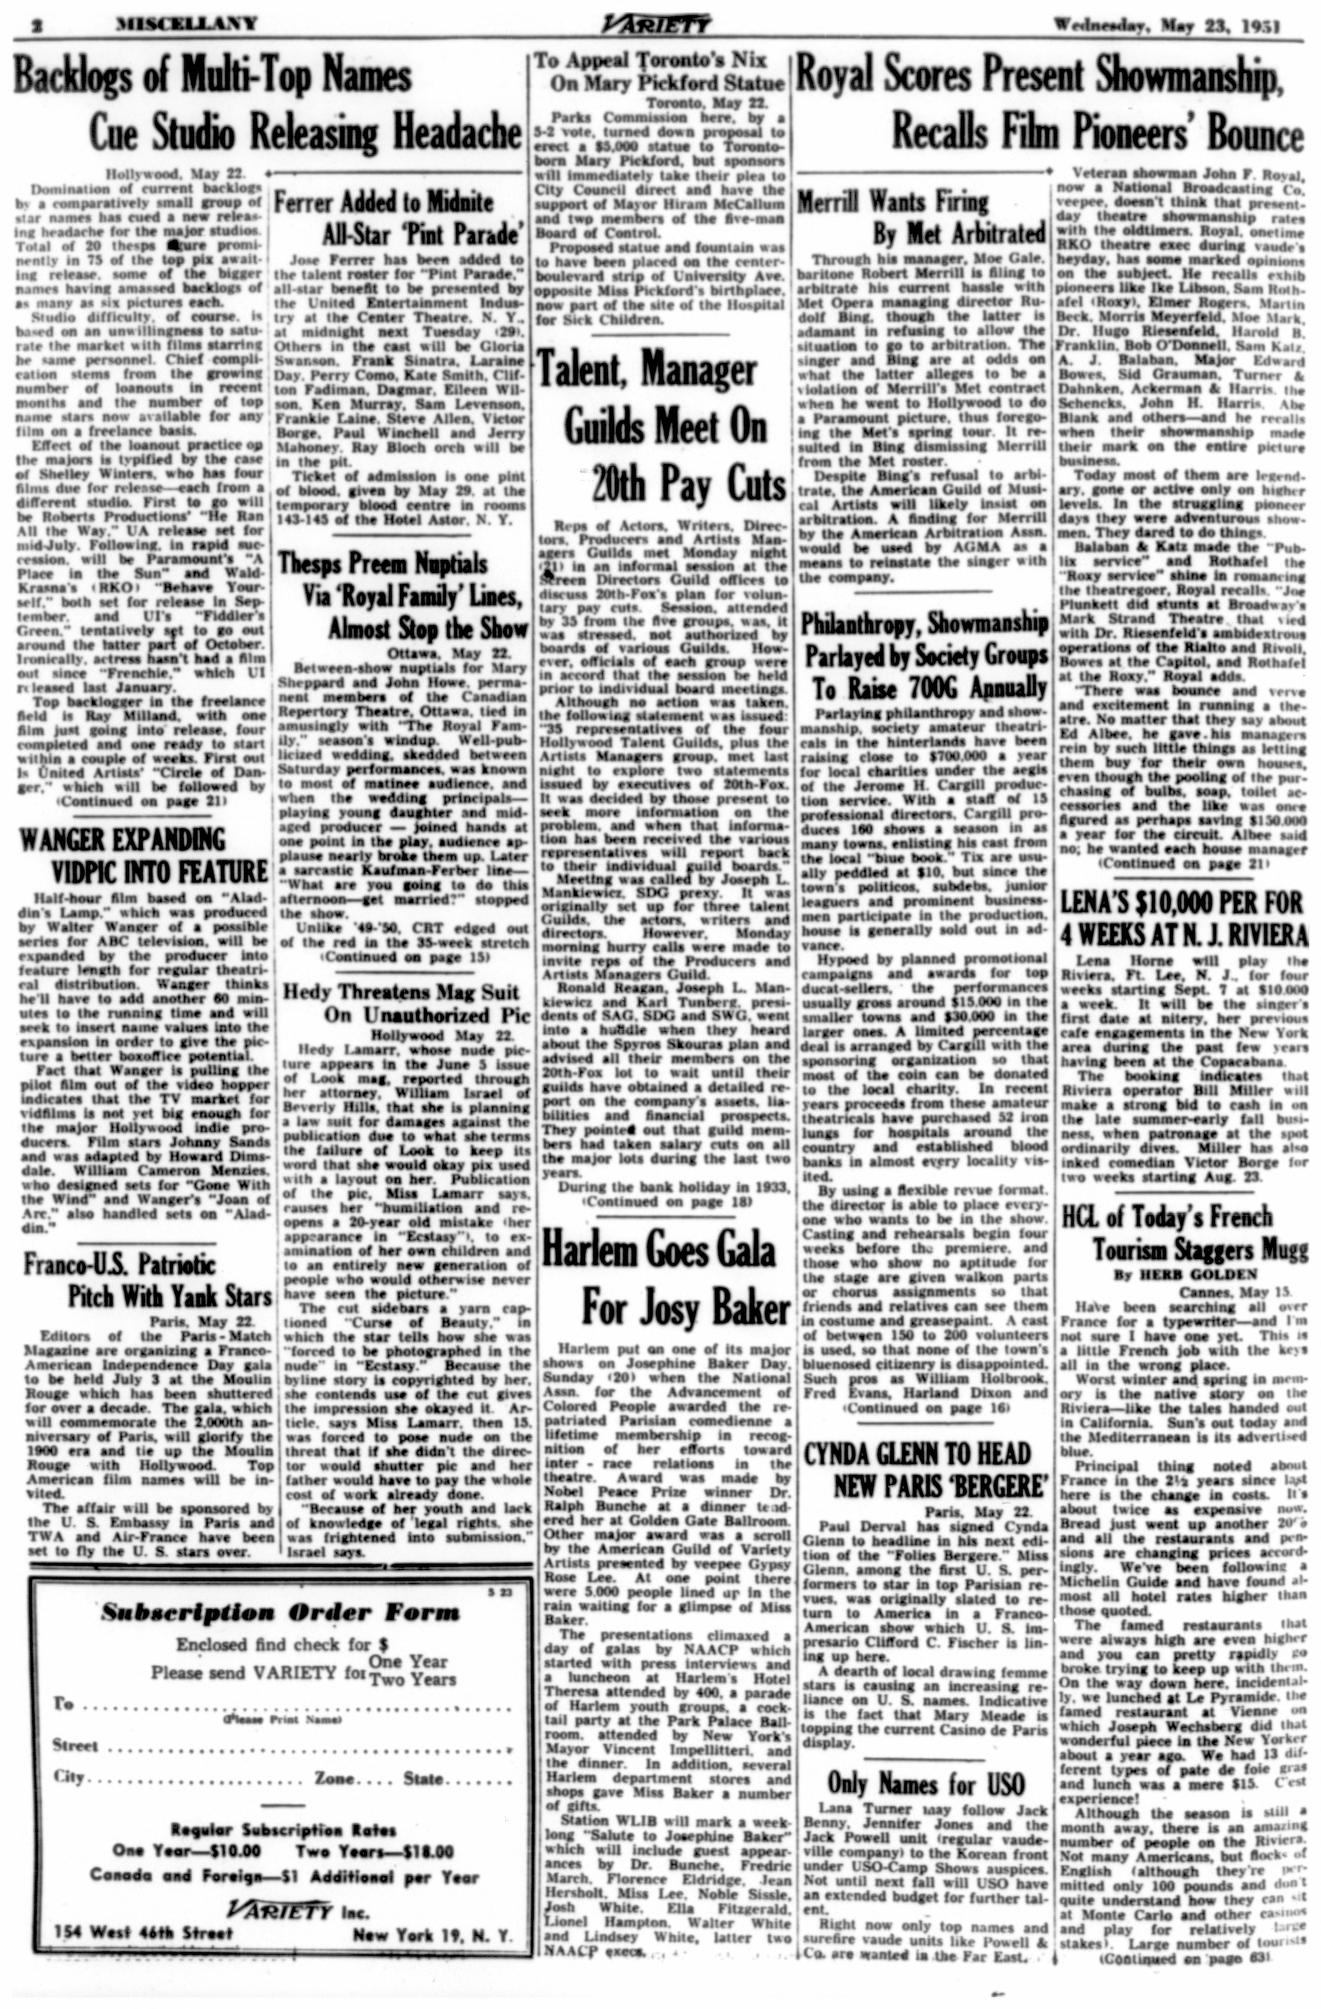 Variety (May 23, 1951)